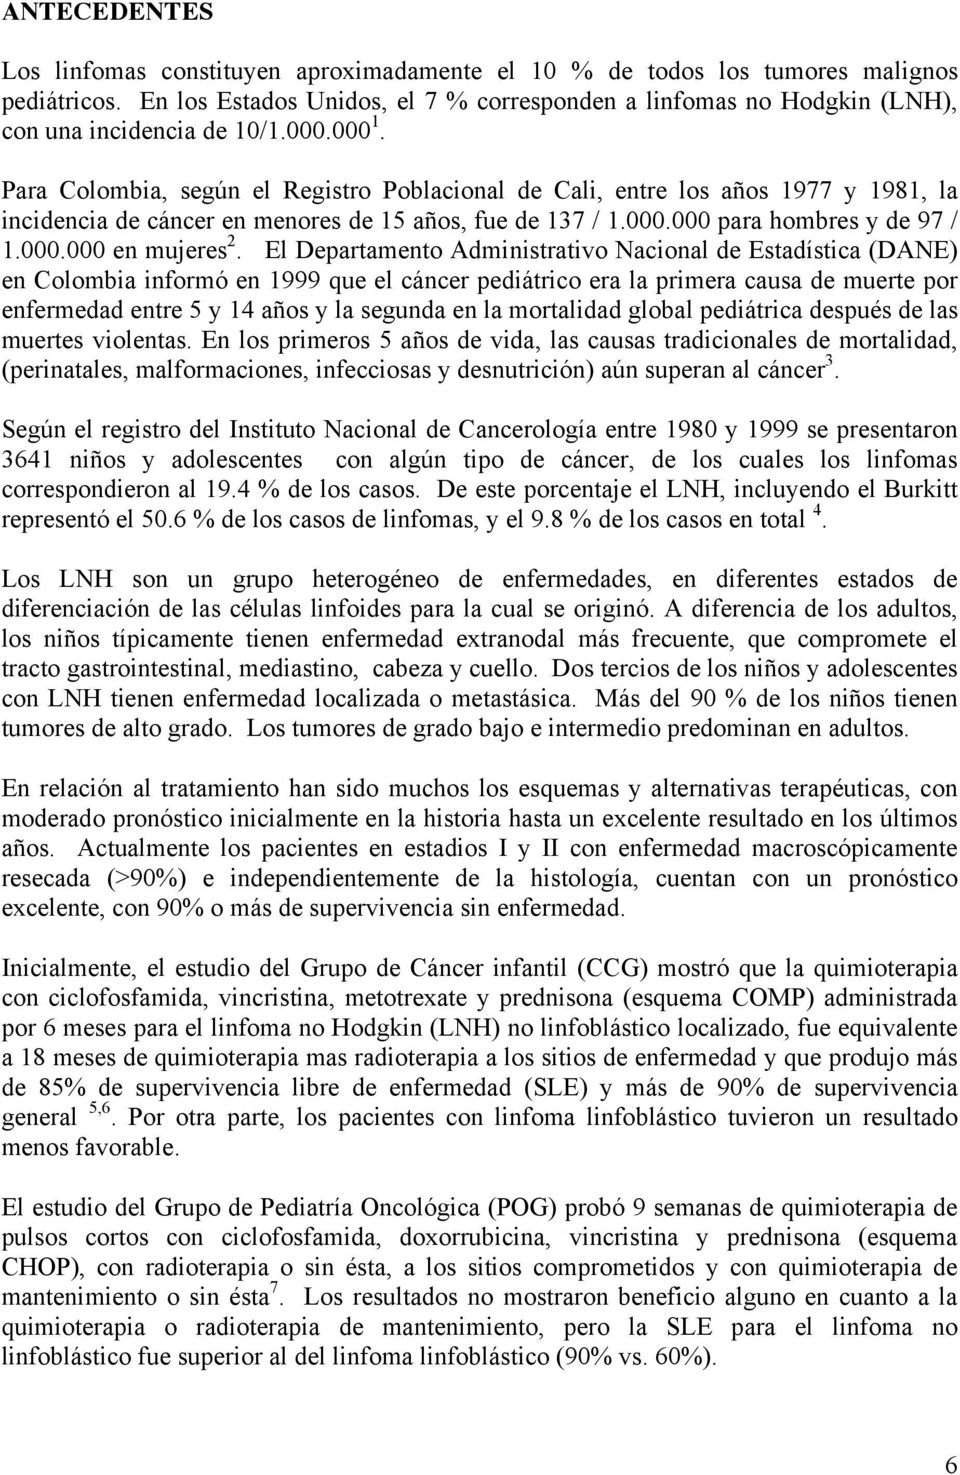 Para Colombia, según el Registro Poblacional de Cali, entre los años 1977 y 1981, la incidencia de cáncer en menores de 15 años, fue de 137 / 1.000.000 para hombres y de 97 / 1.000.000 en mujeres 2.